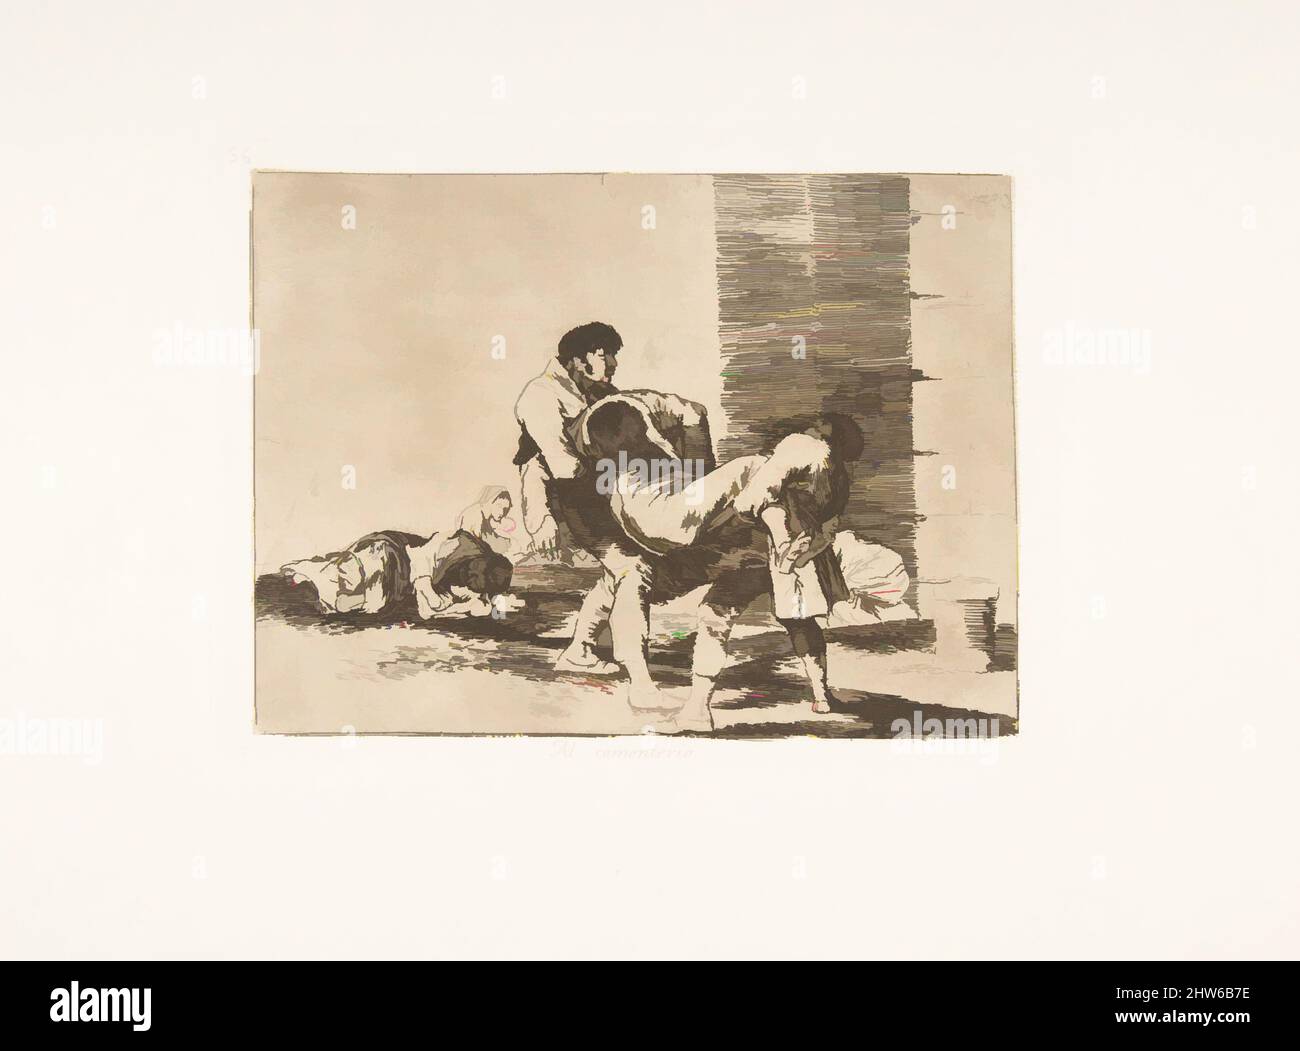 Art inspiré par la planche 56 de 'les désastres de la guerre' (Los Desastres de la Guerra): 'Au cimetière.'(Al cementerio.), 1811–12 (publié en 1863), Etching, lavis et point sec, plaque: 6 1/8 × 8 1/16 po. (15,5 × 20,5 cm), Prints, Goya (Francisco de Goya y Lucientes) (Espagnol, Fuendetodos, oeuvres classiques modernisées par Artotop avec une touche de modernité. Formes, couleur et valeur, impact visuel accrocheur sur l'art émotions par la liberté d'œuvres d'art d'une manière contemporaine. Un message intemporel qui cherche une nouvelle direction créative. Artistes qui se tournent vers le support numérique et créent le NFT Artotop Banque D'Images